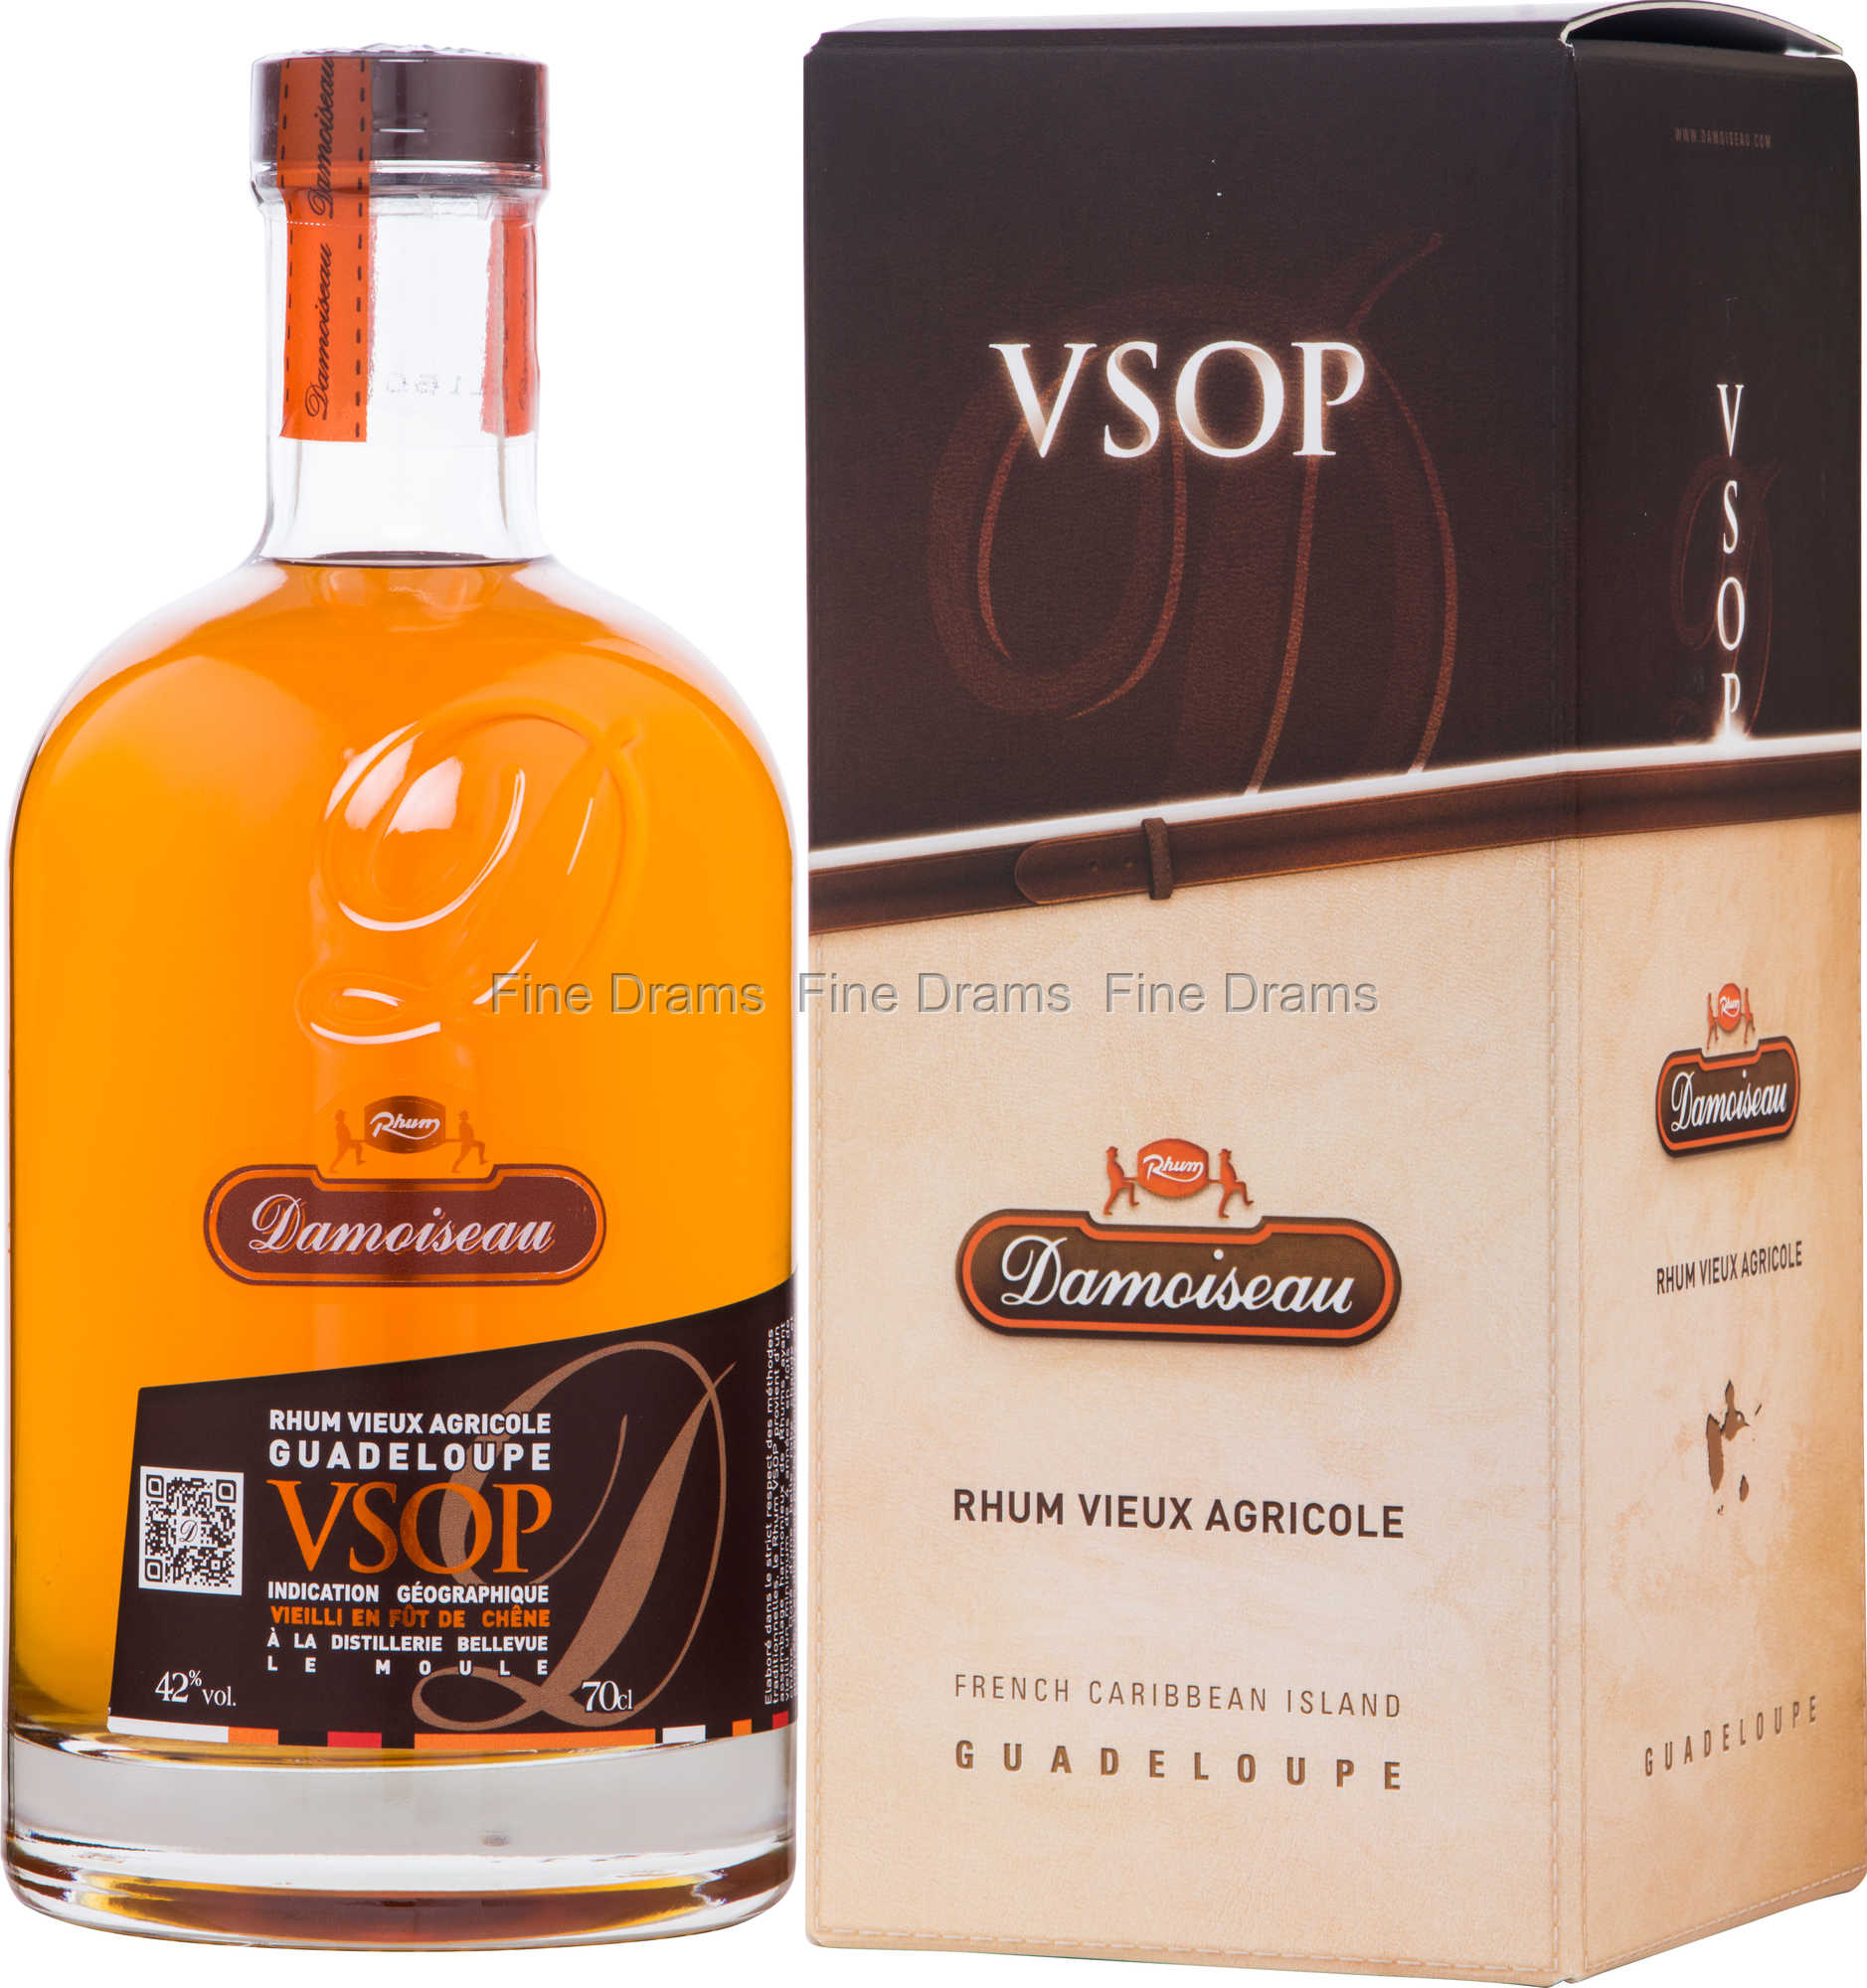 Damoiseau VSOP Rhum Vieux Agricole Guadeloupe 42% vol. Rum